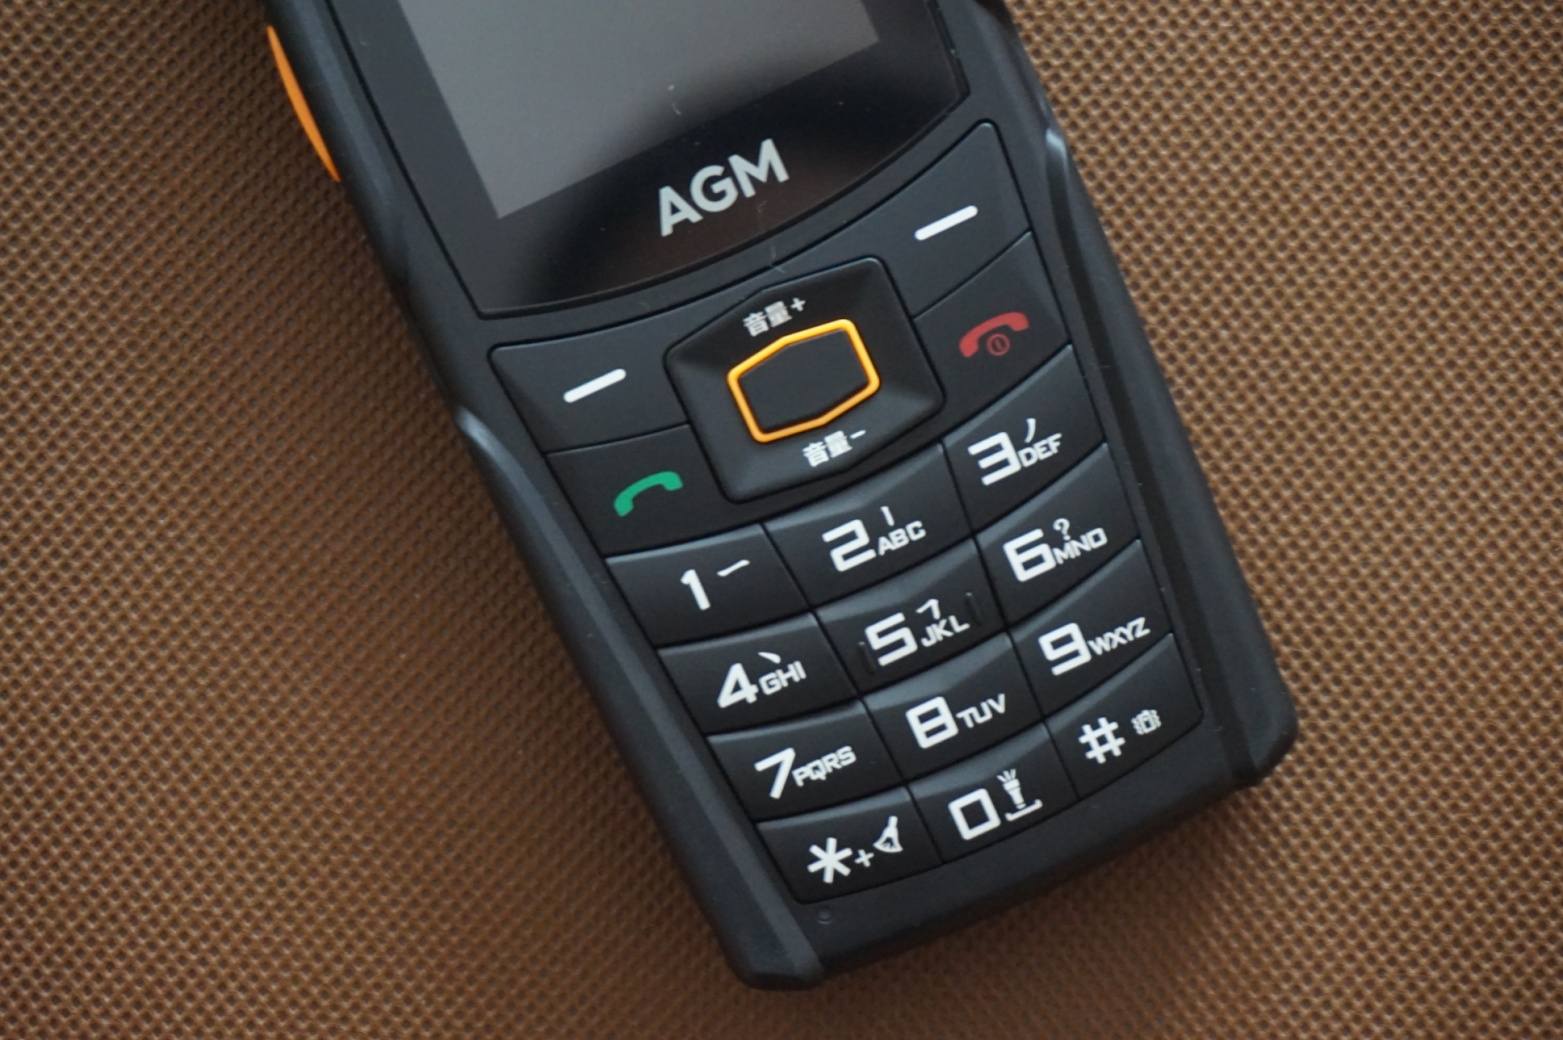 有思想的功能机-AGM M6 三防手机评测